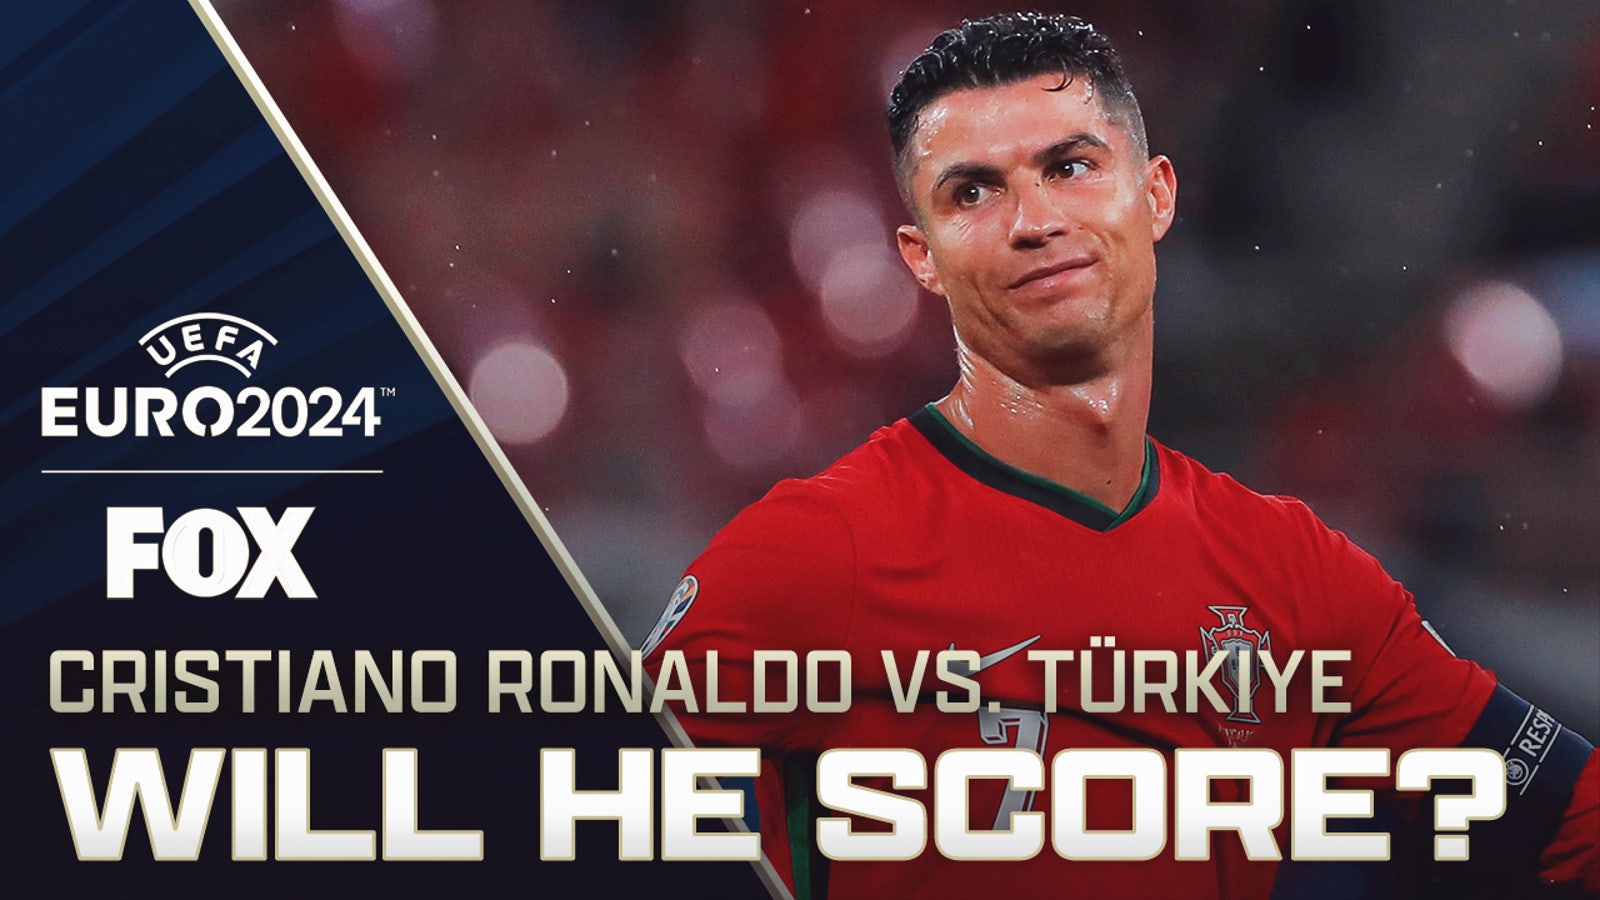 Türkiye vs. Portugal Preview: Will Cristiano Ronaldo score? | UEFA Euro 2024